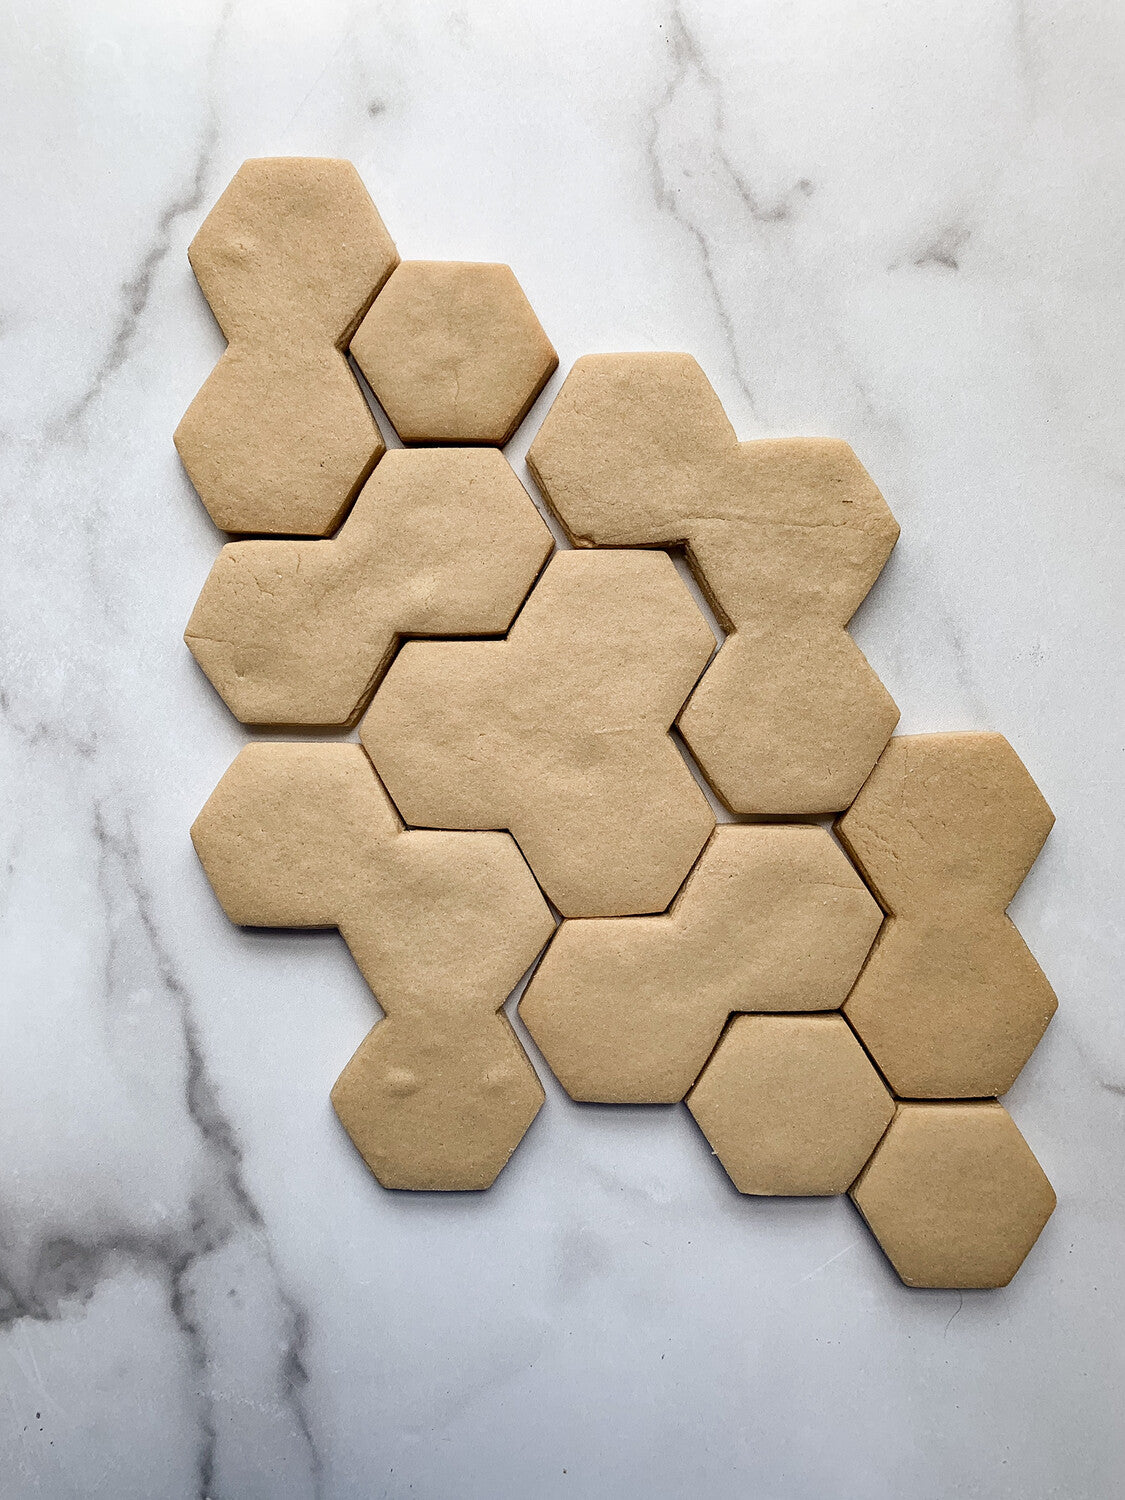 Hexagonal Mosaic Cookie Cutters